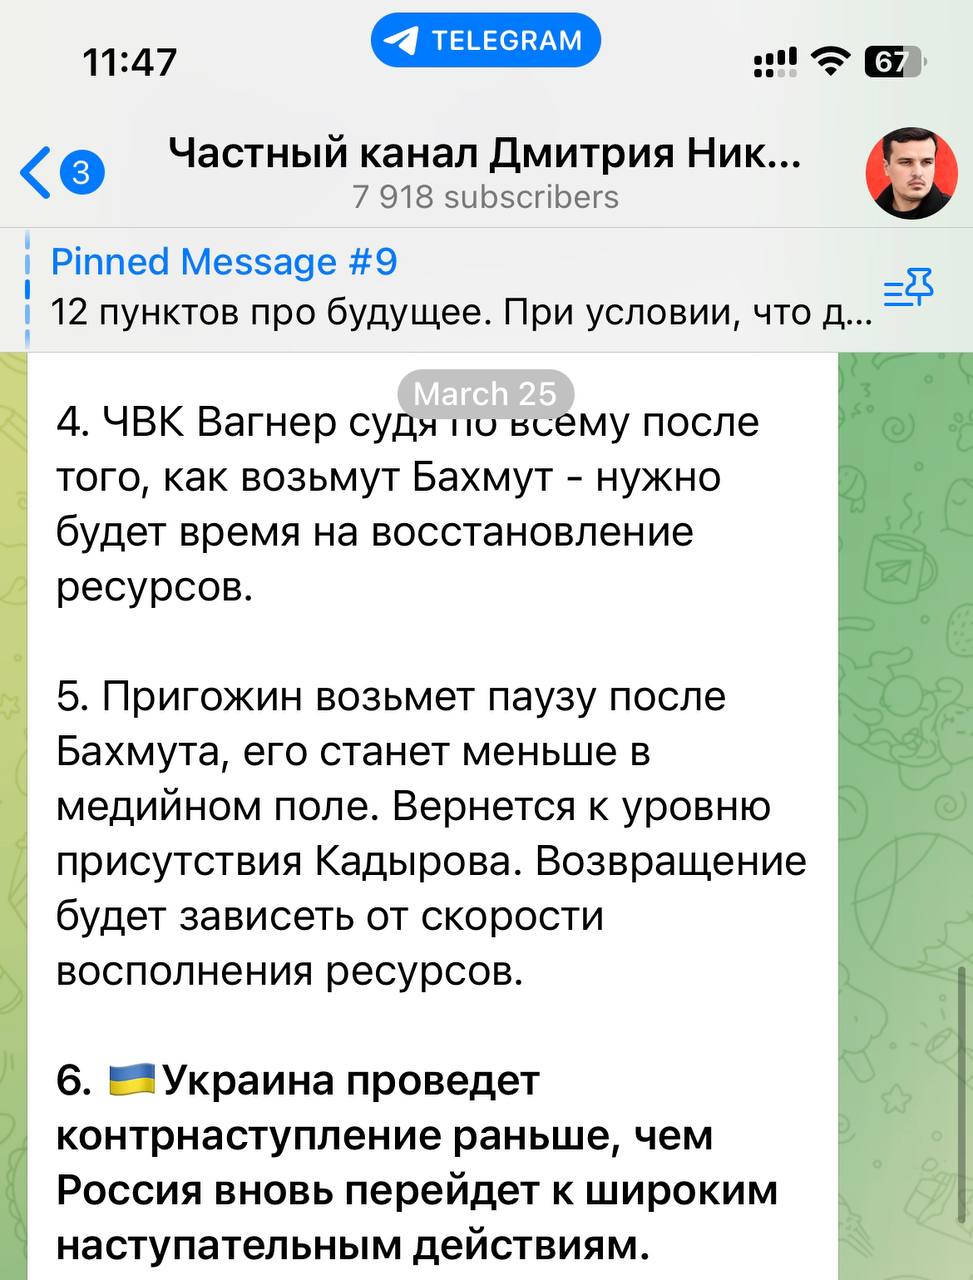 Дмитрий никотин телеграмм последнее видео смотреть бесплатно без регистрации в хорошем качестве фото 106